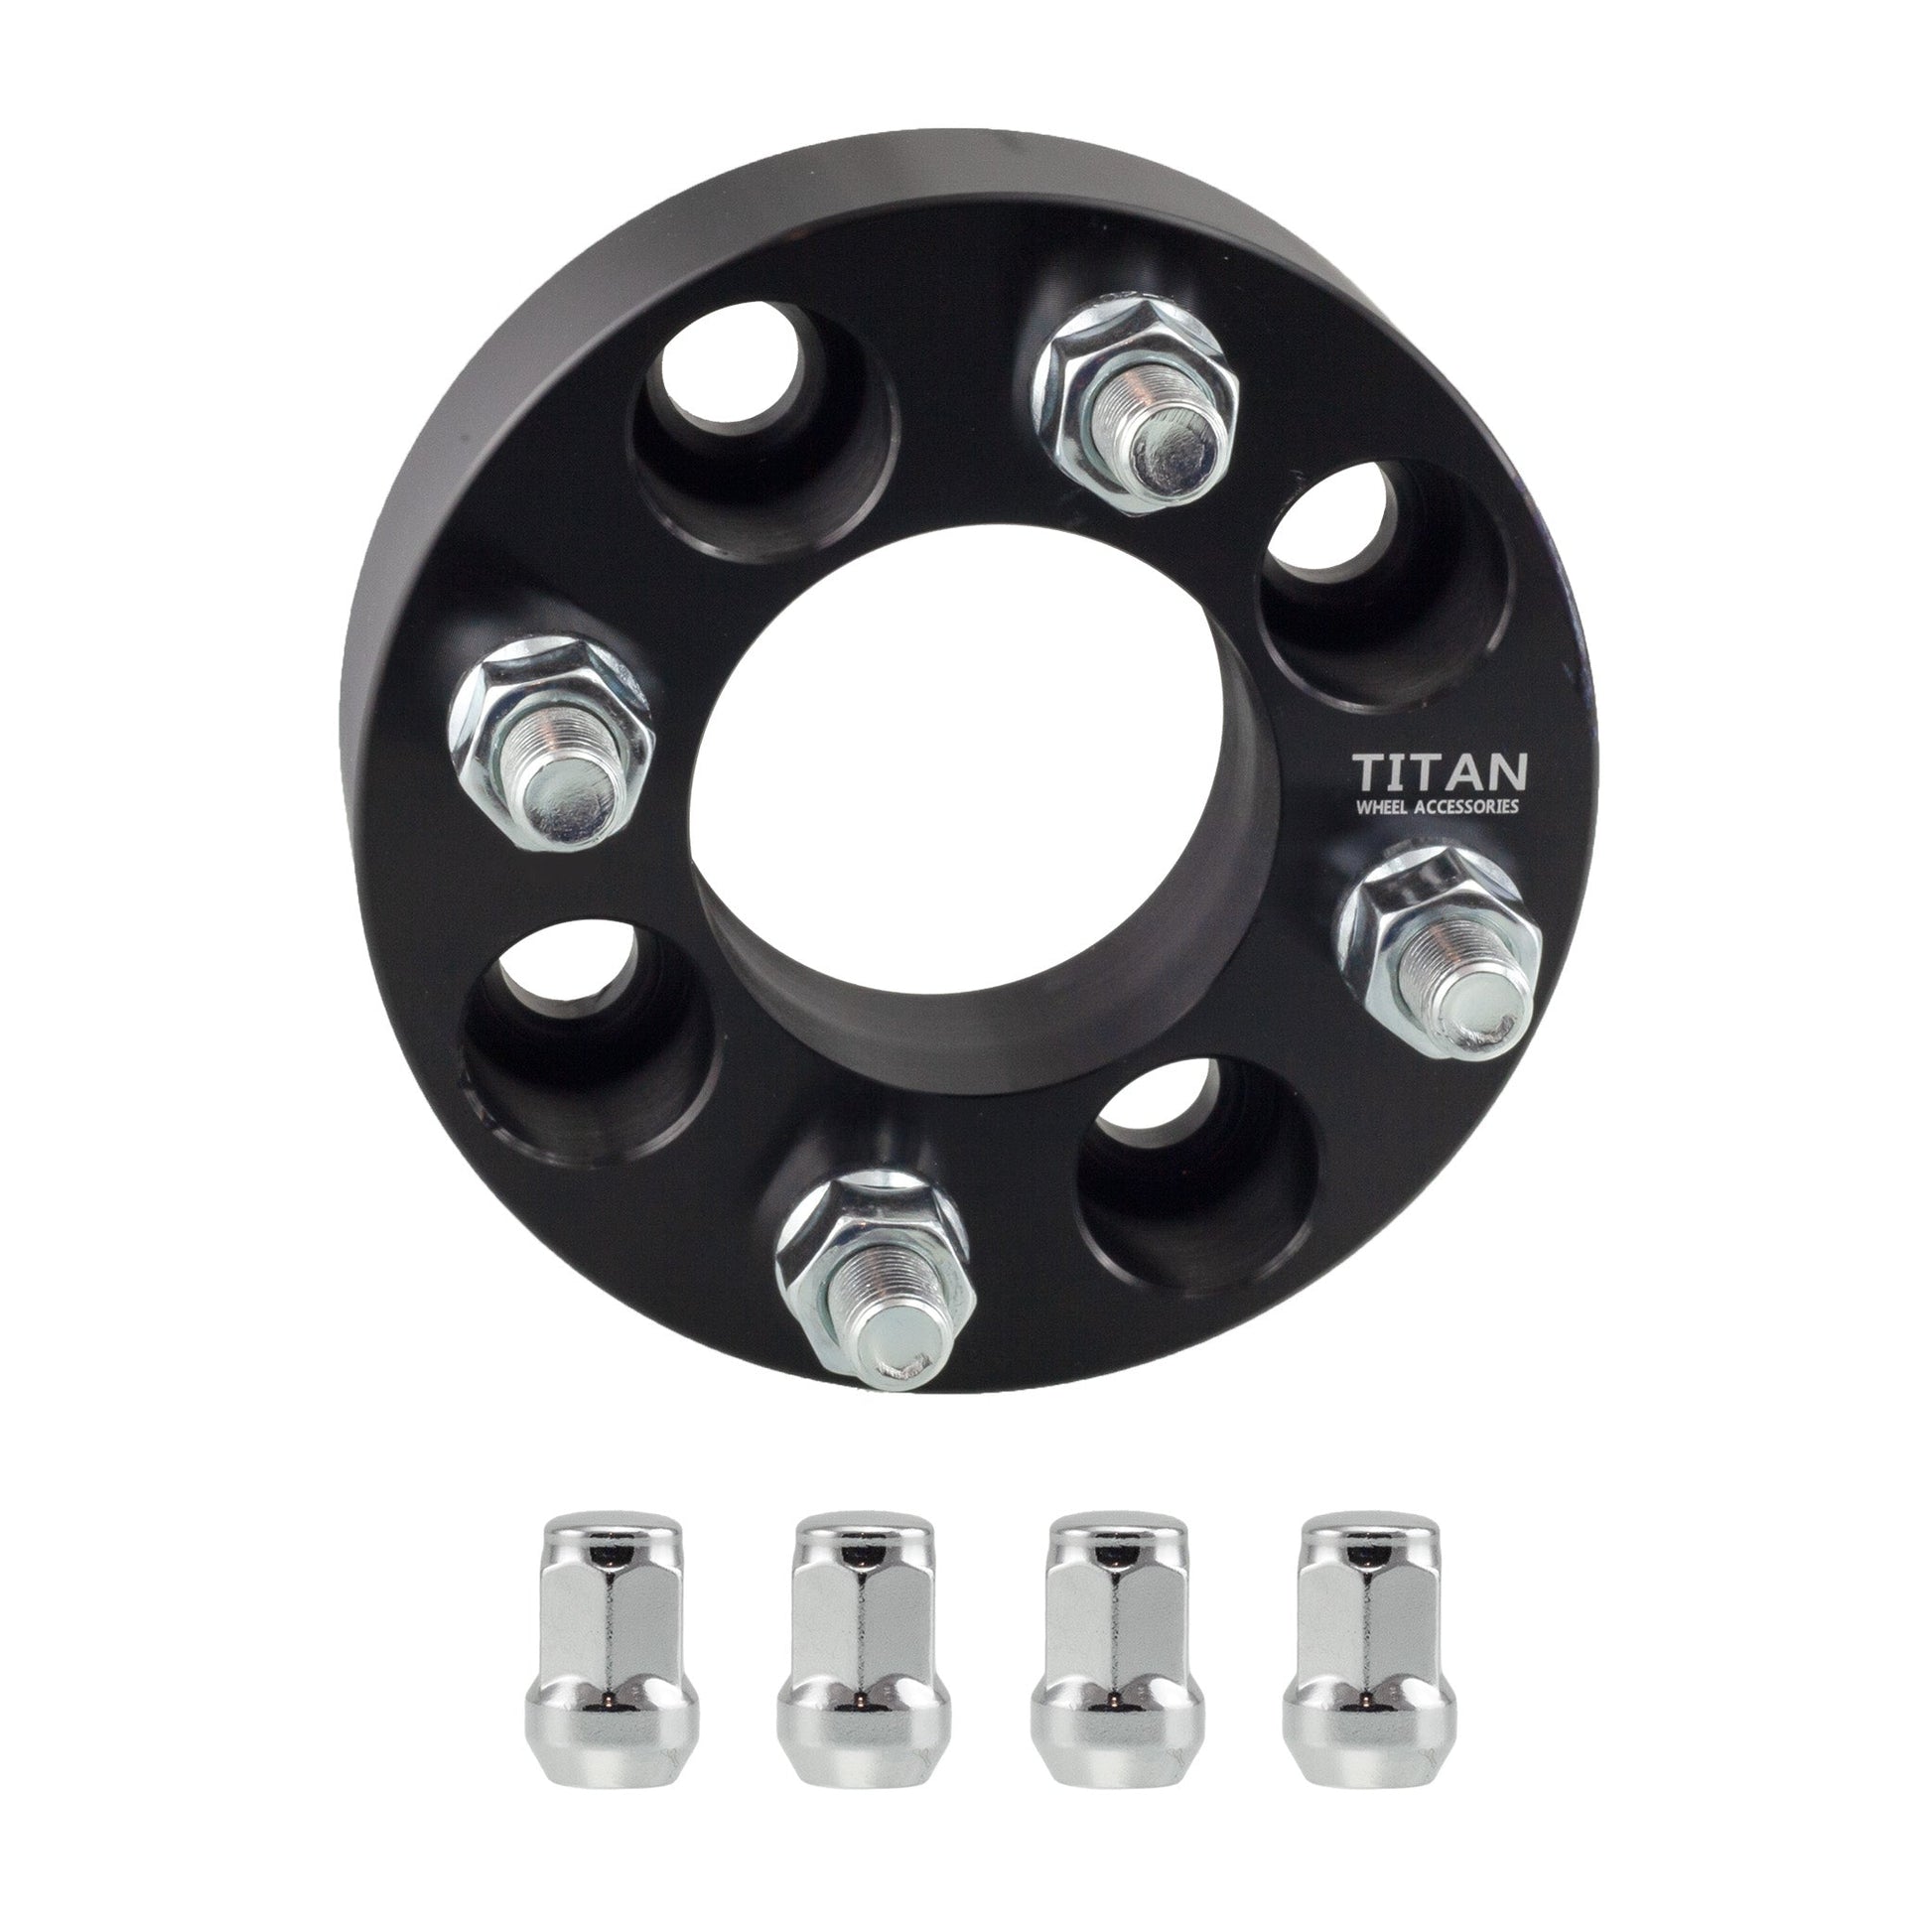 25mm 4x114.3 (4x4.5) to 4x100 Wheel Studs – Titan Wheel Accessories